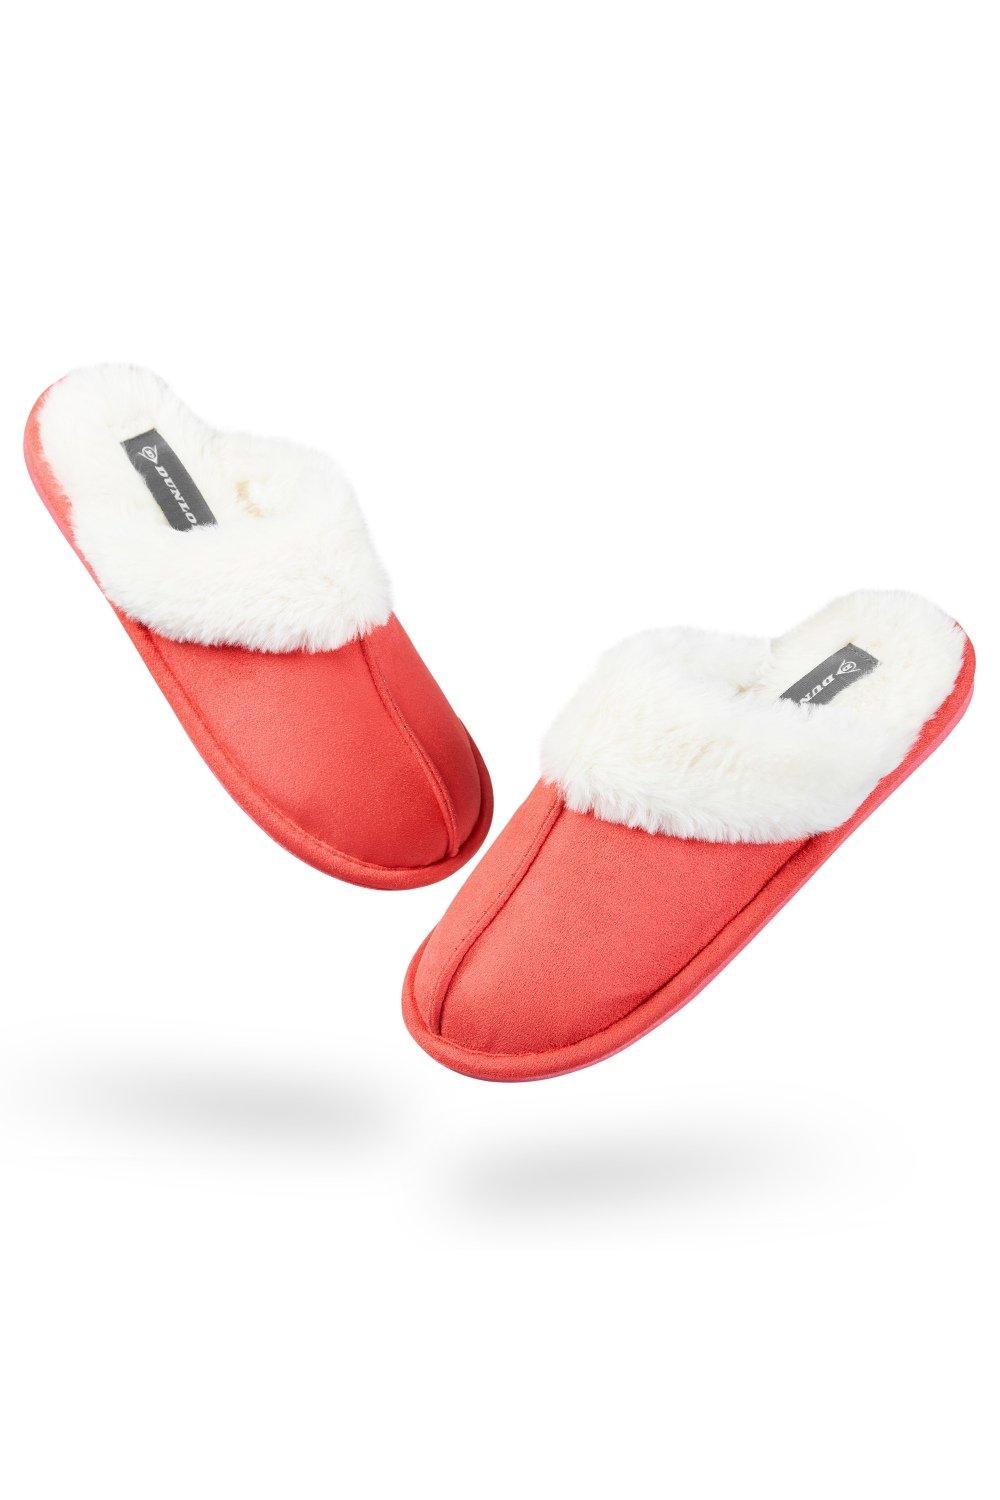 Домашние пушистые тапочки на толстой меховой подкладке Dunlop, красный slides women sandals fur slides for women flat slippers for women slipper women summer slipper slippers women slippers